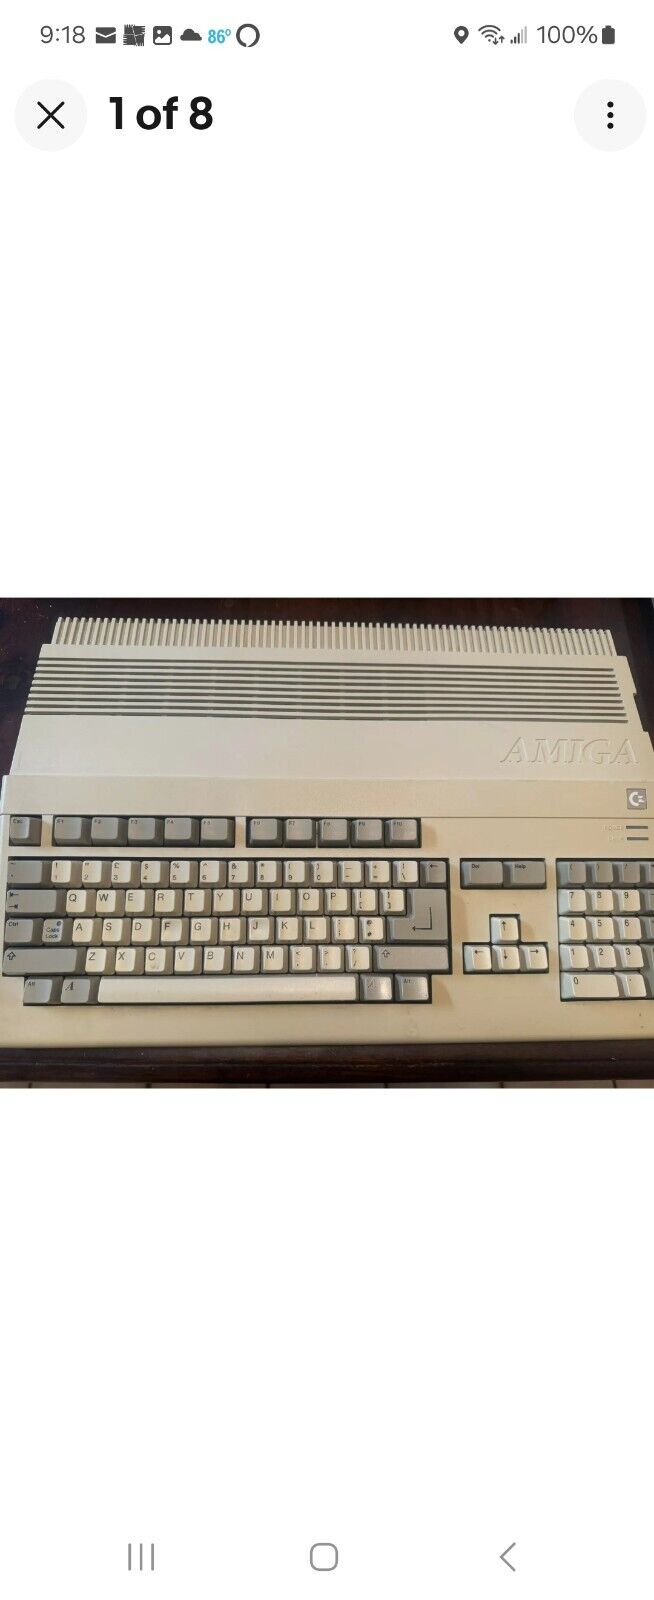   Commodore Amiga 500